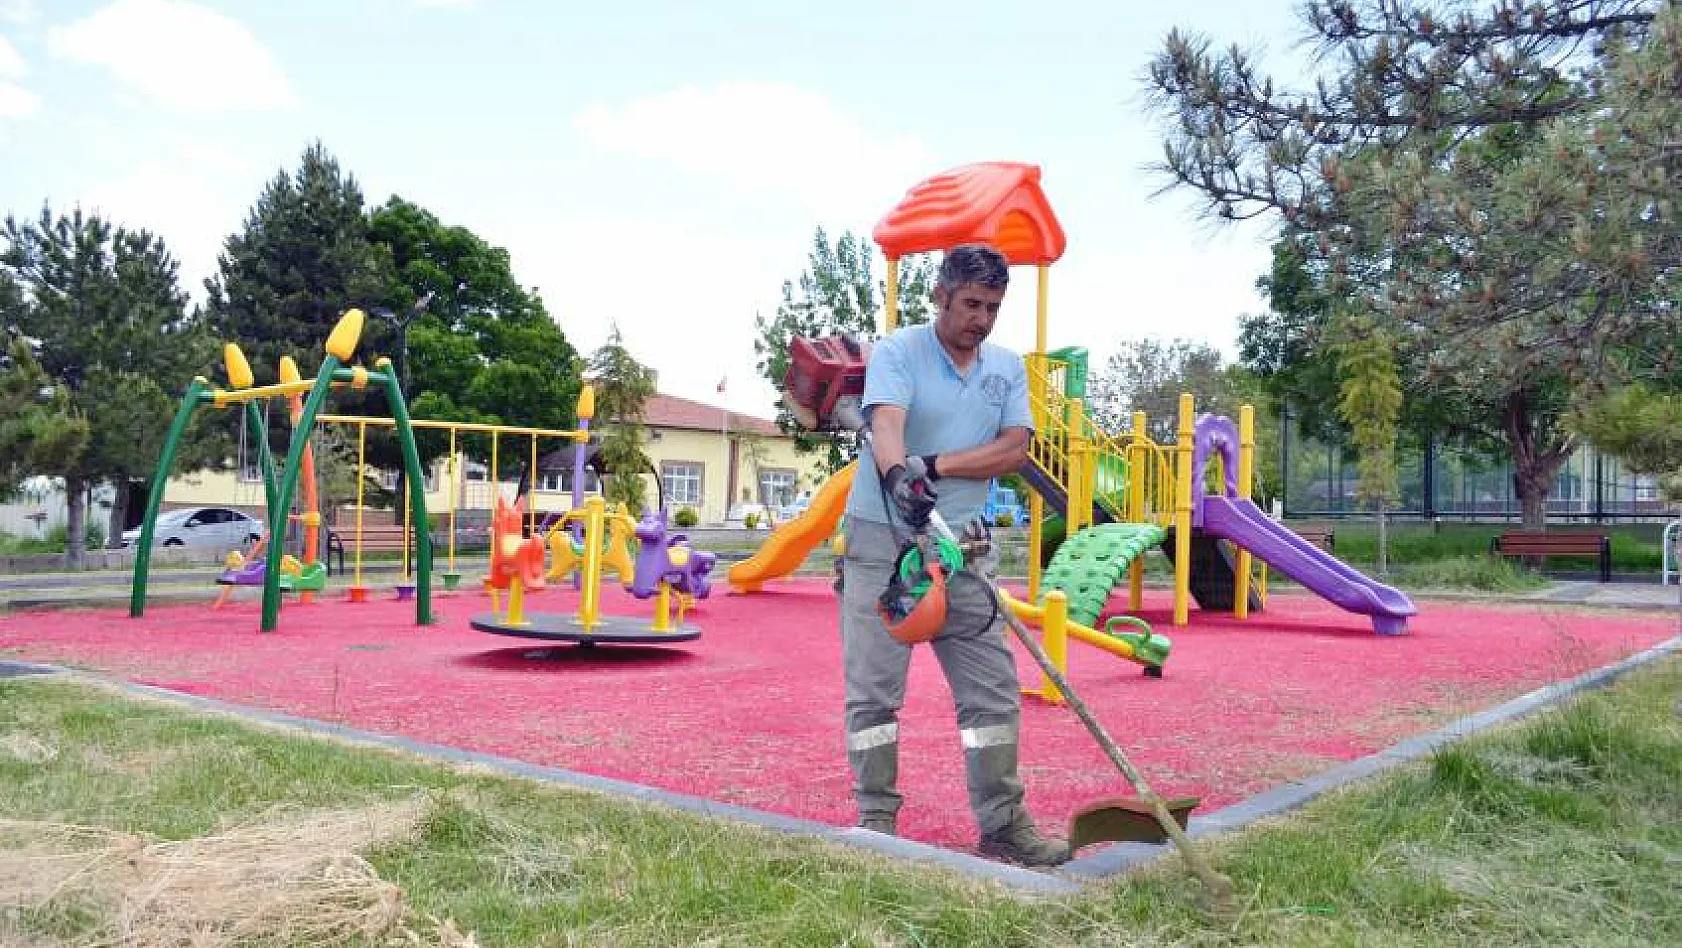 Bünyan Belediyesi tarafından çocuklar için parklar hazırlandı